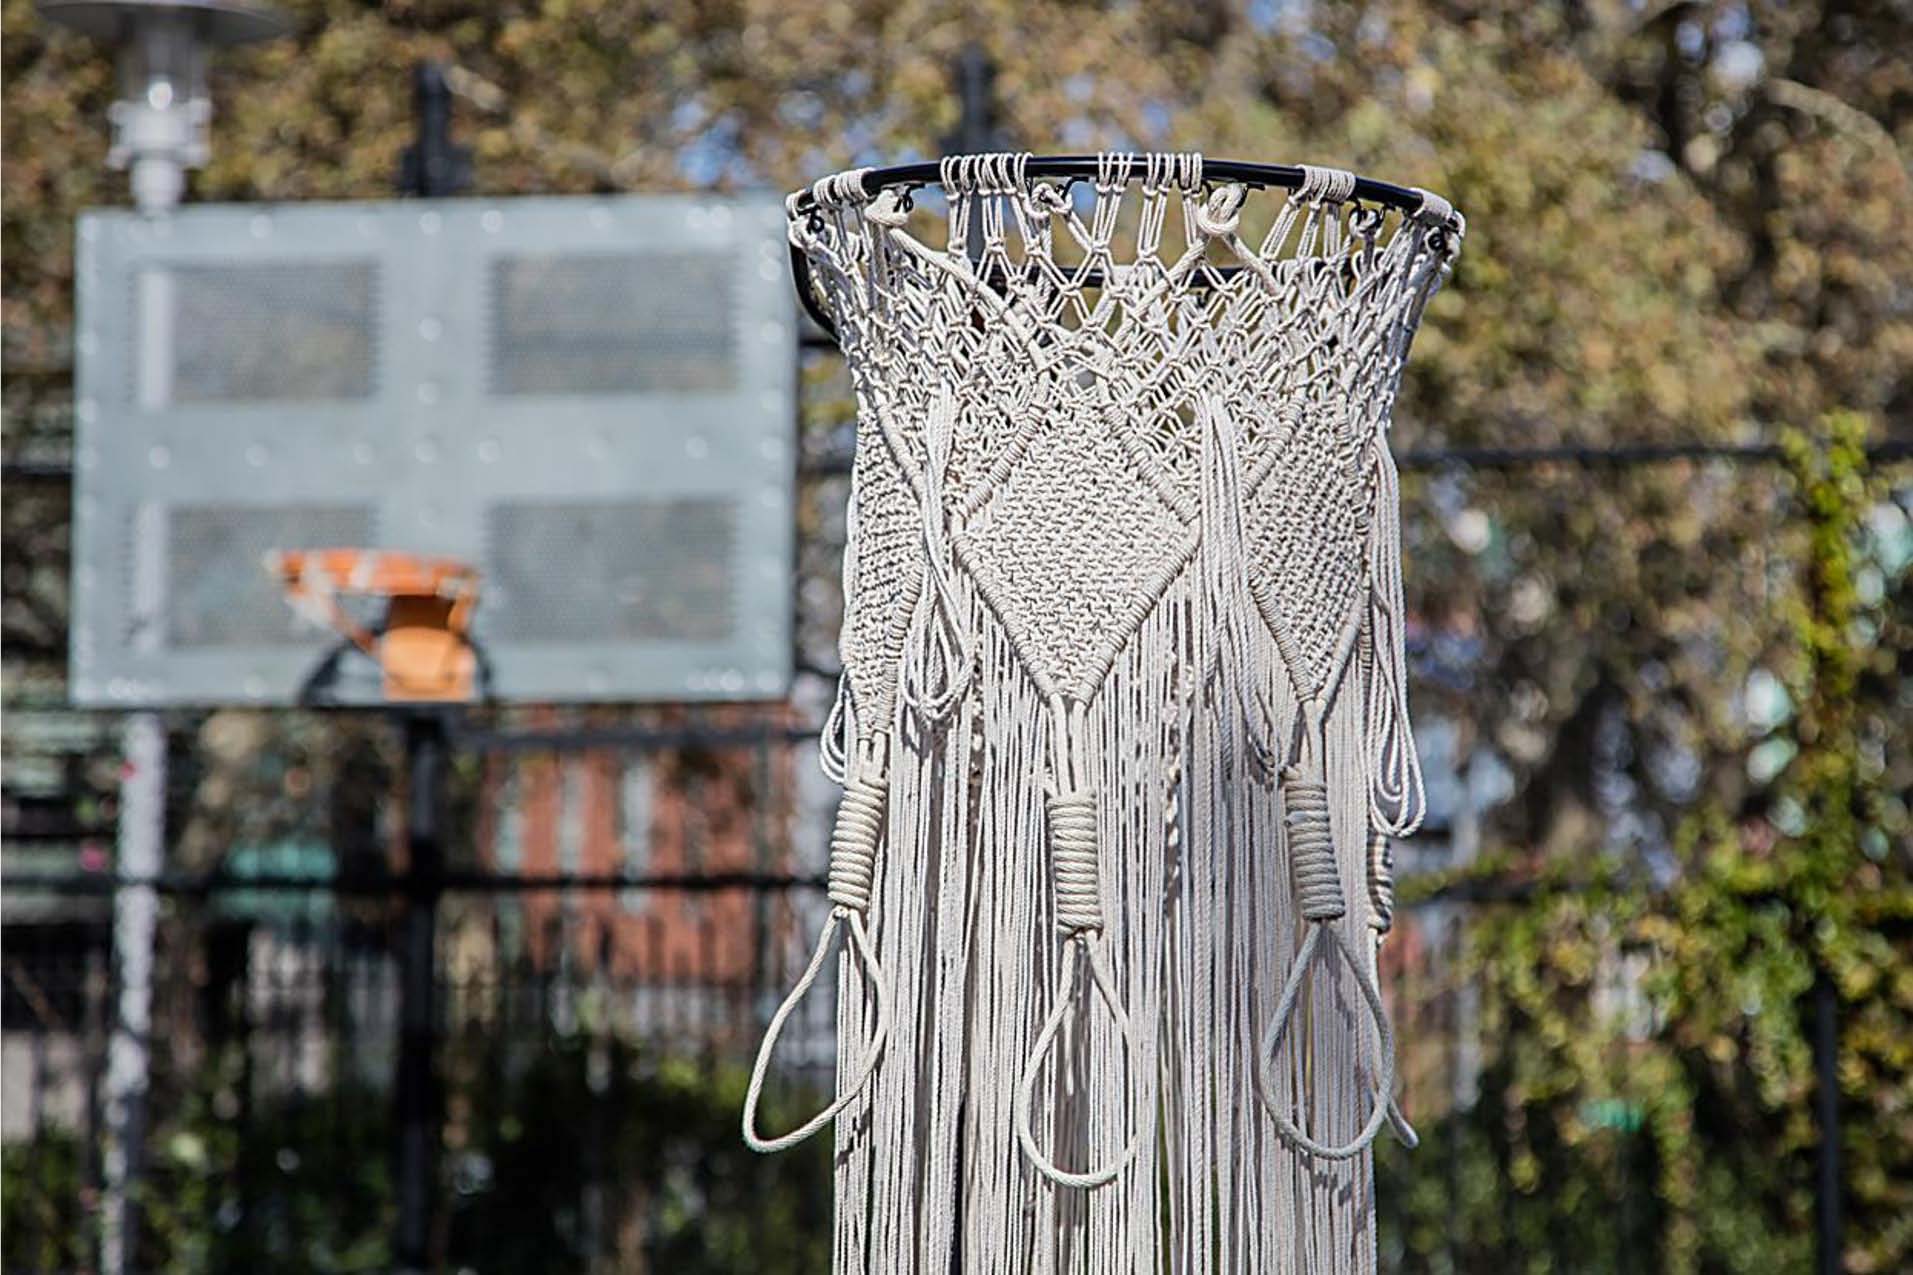 Fotografia da borda de uma cesta de basquete com uma rede de macramê pendurada nela.